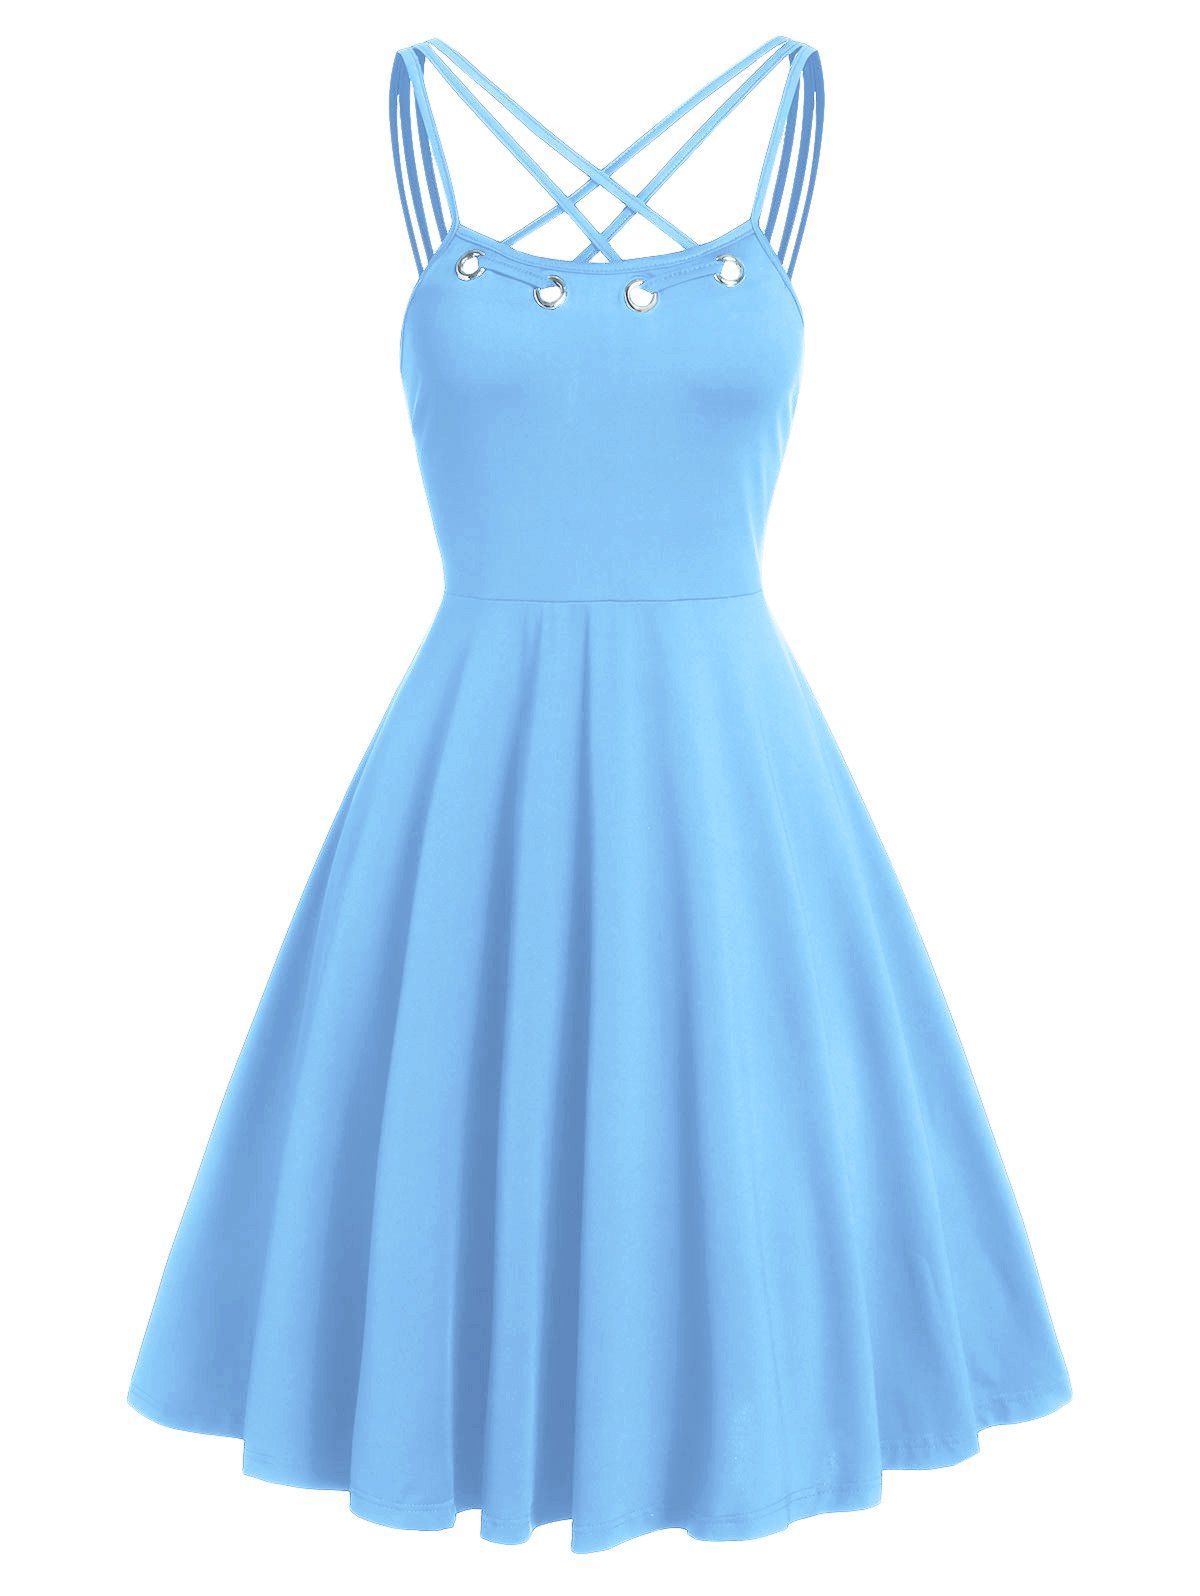 Criss Cross Grommet High Waisted Flare Cami Dress - DENIM BLUE M